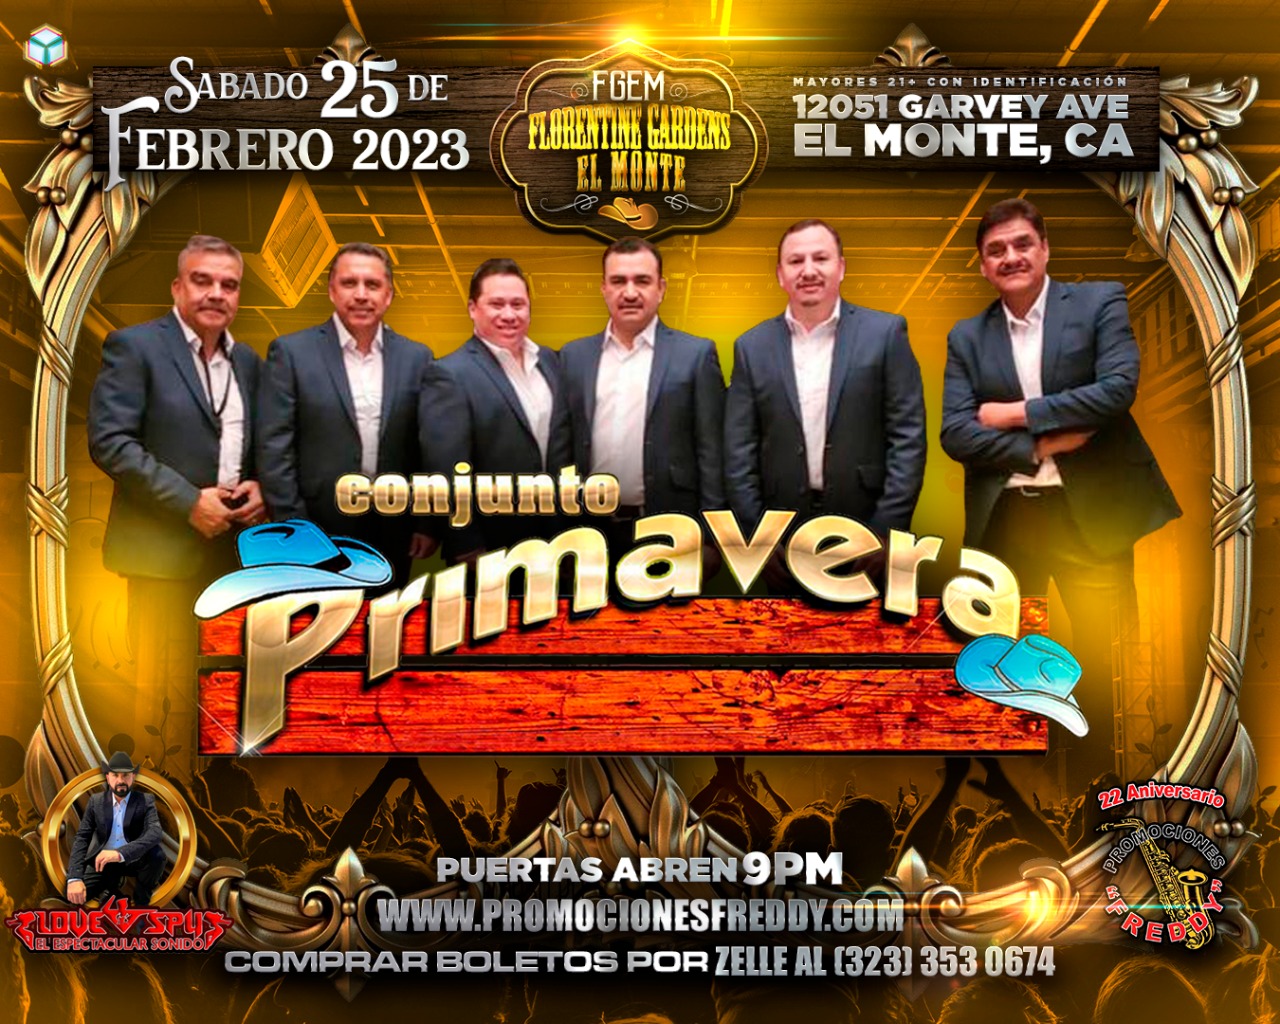 Buy Tickets to CONJUNTO PRIMAVERA in El Monte on Feb 25, 2023